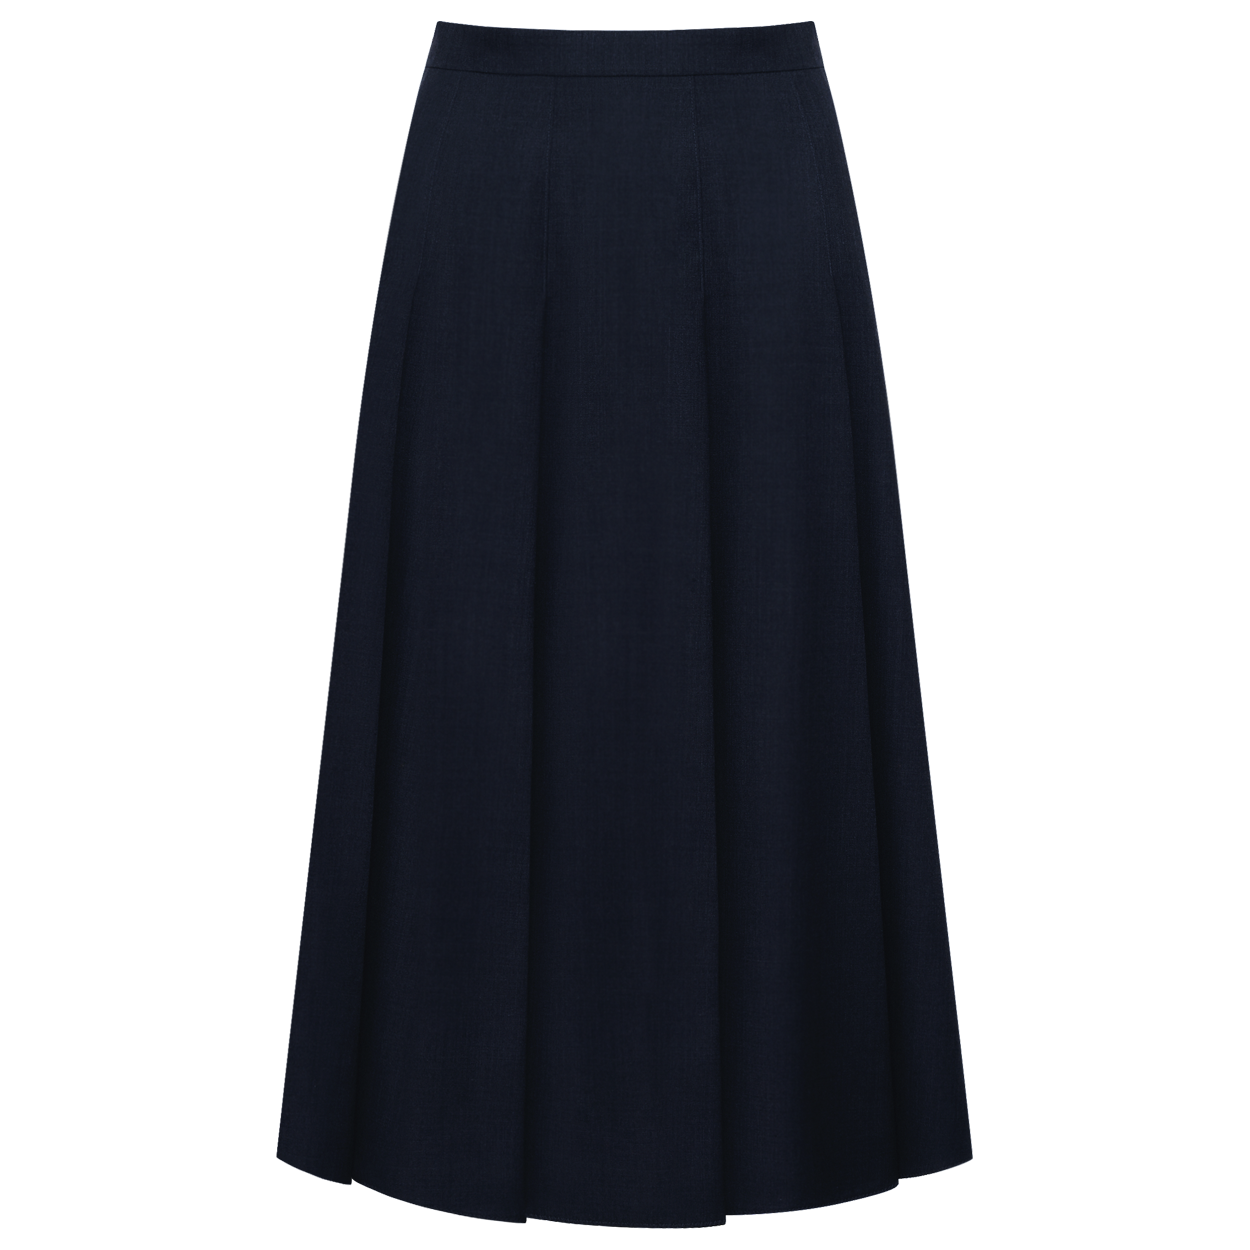 Mela pleats skirt (dark navy)